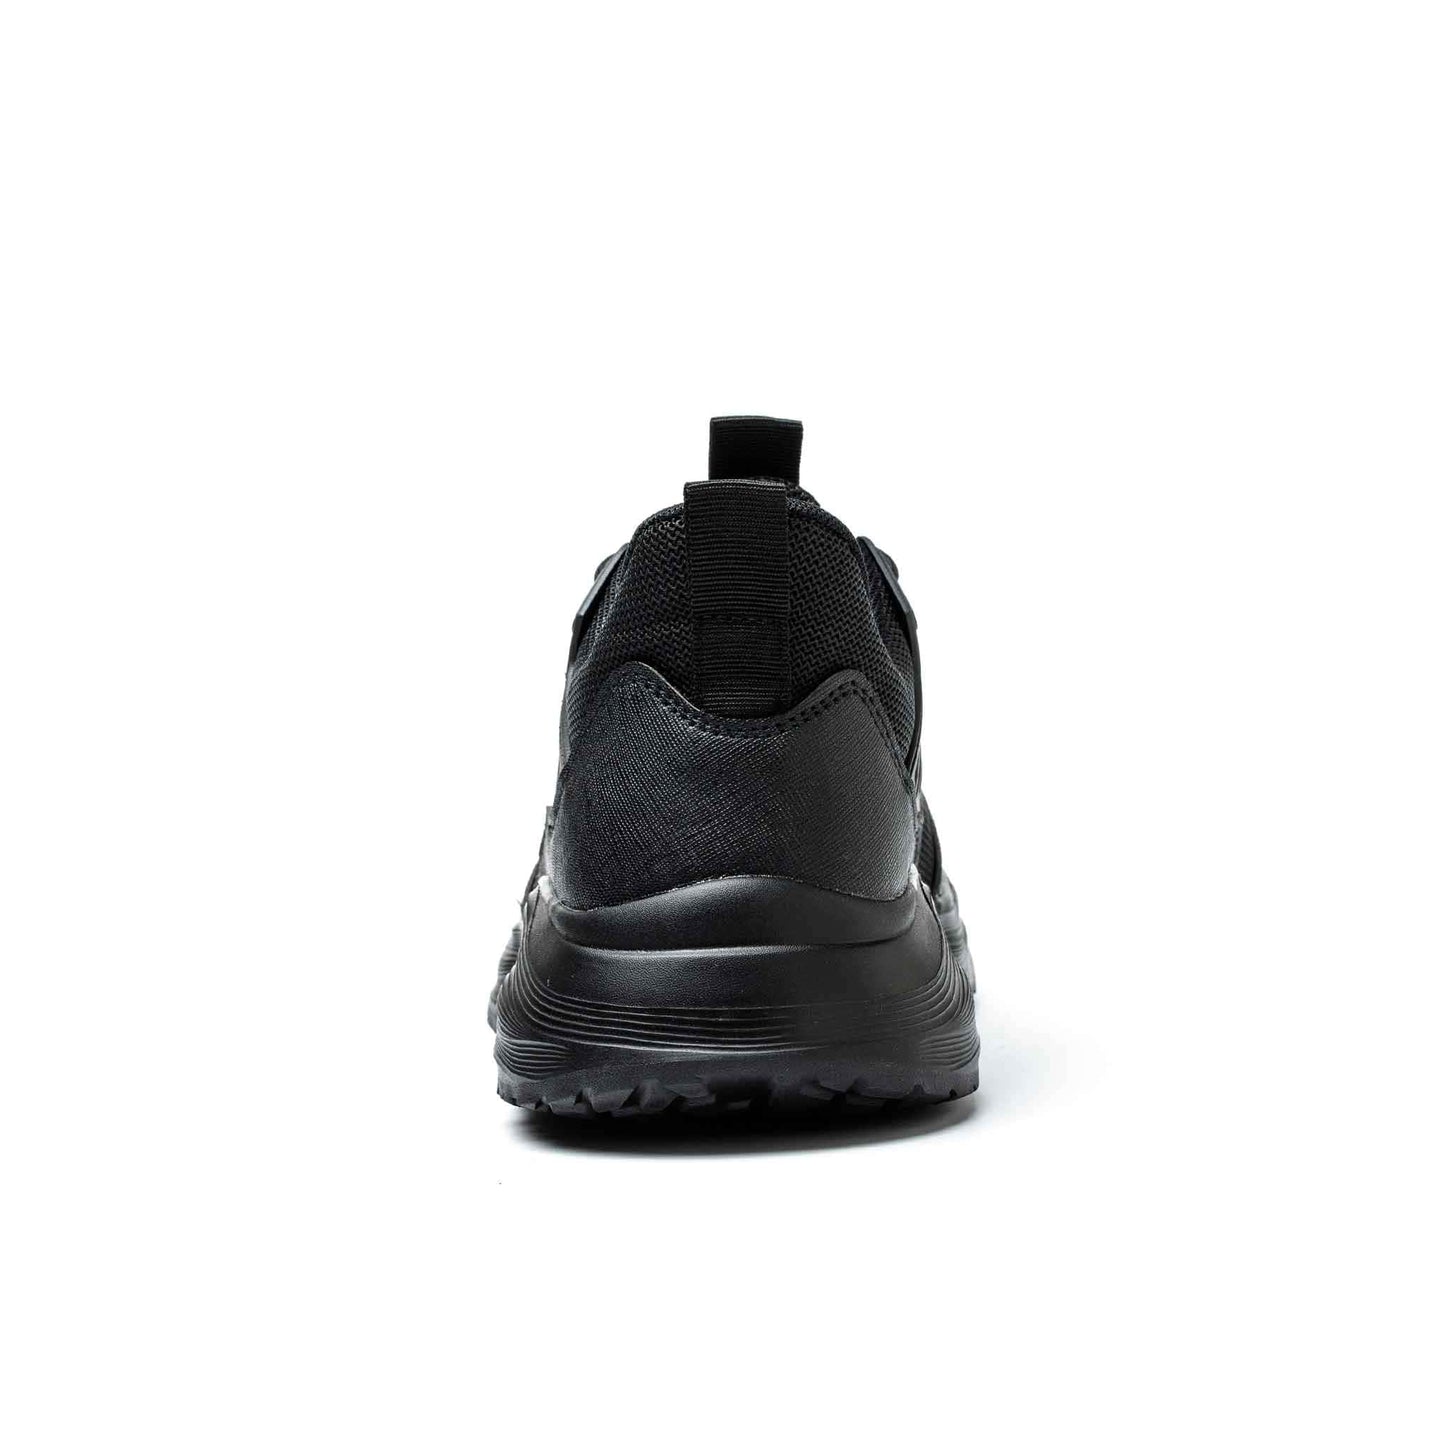 Ironfeet Spring - Chaussures de sécurité légères avec semelles compensées